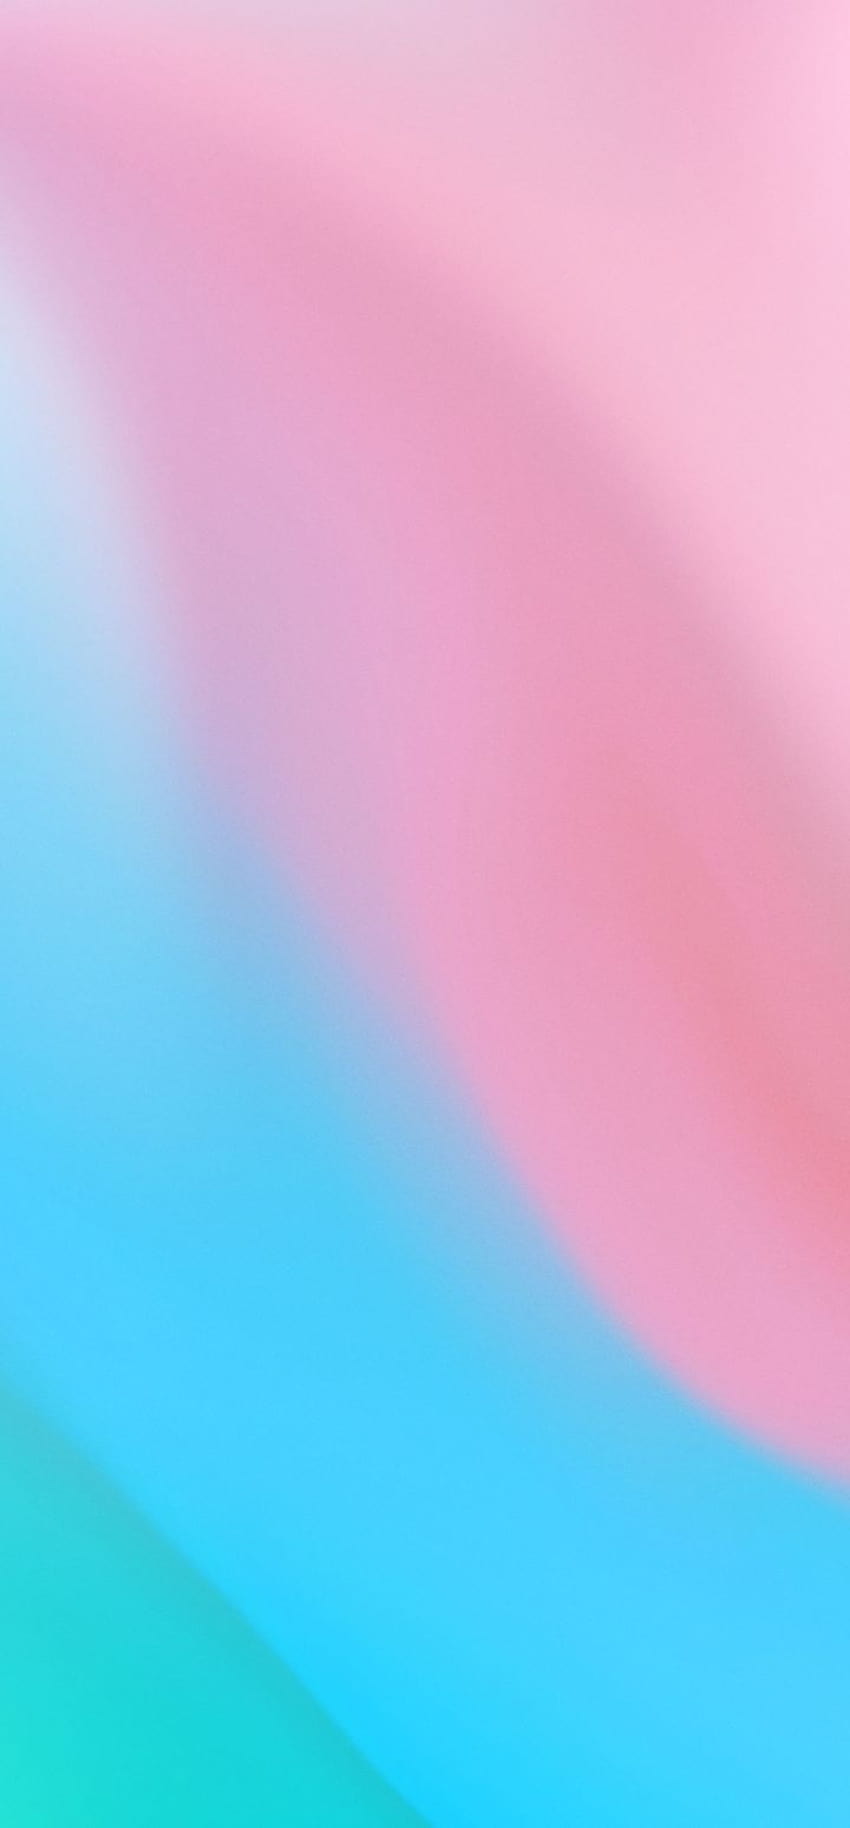 720 x 1548 Pink Blau Farbmischung 720 x 1548 Auflösung , Mischung aus Blau und Pink HD-Handy-Hintergrundbild